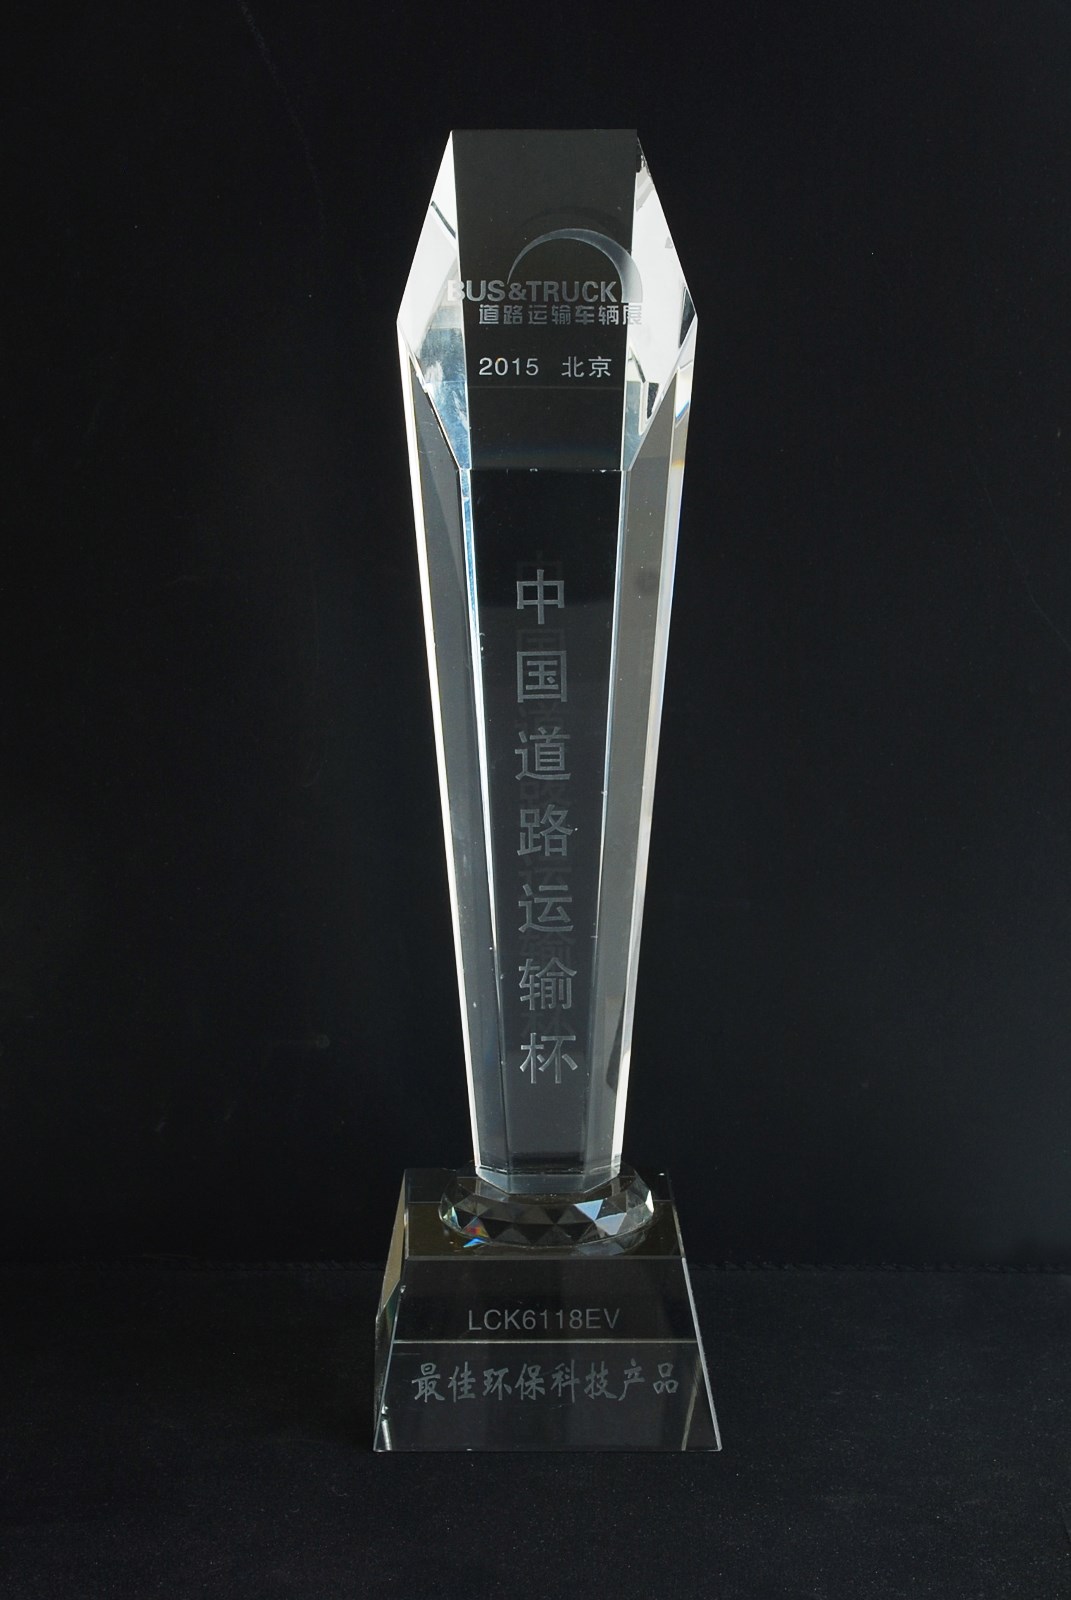 2015中国道路运输杯最佳环保科技产品奖.JPG